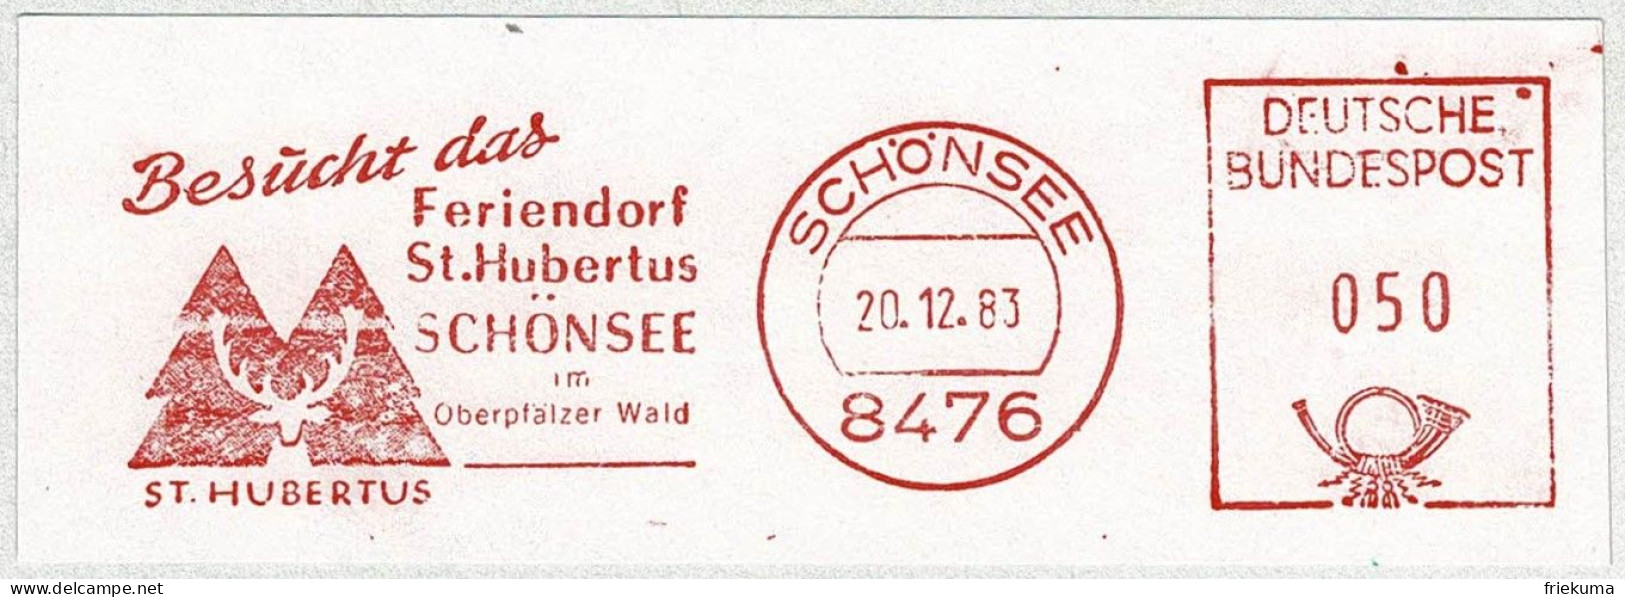 Deutsche Bundespost 1983, Freistempel / EMA / Meterstamp Schönsee, Feriendorf St. Hubertus, Jagd - Settore Alberghiero & Ristorazione